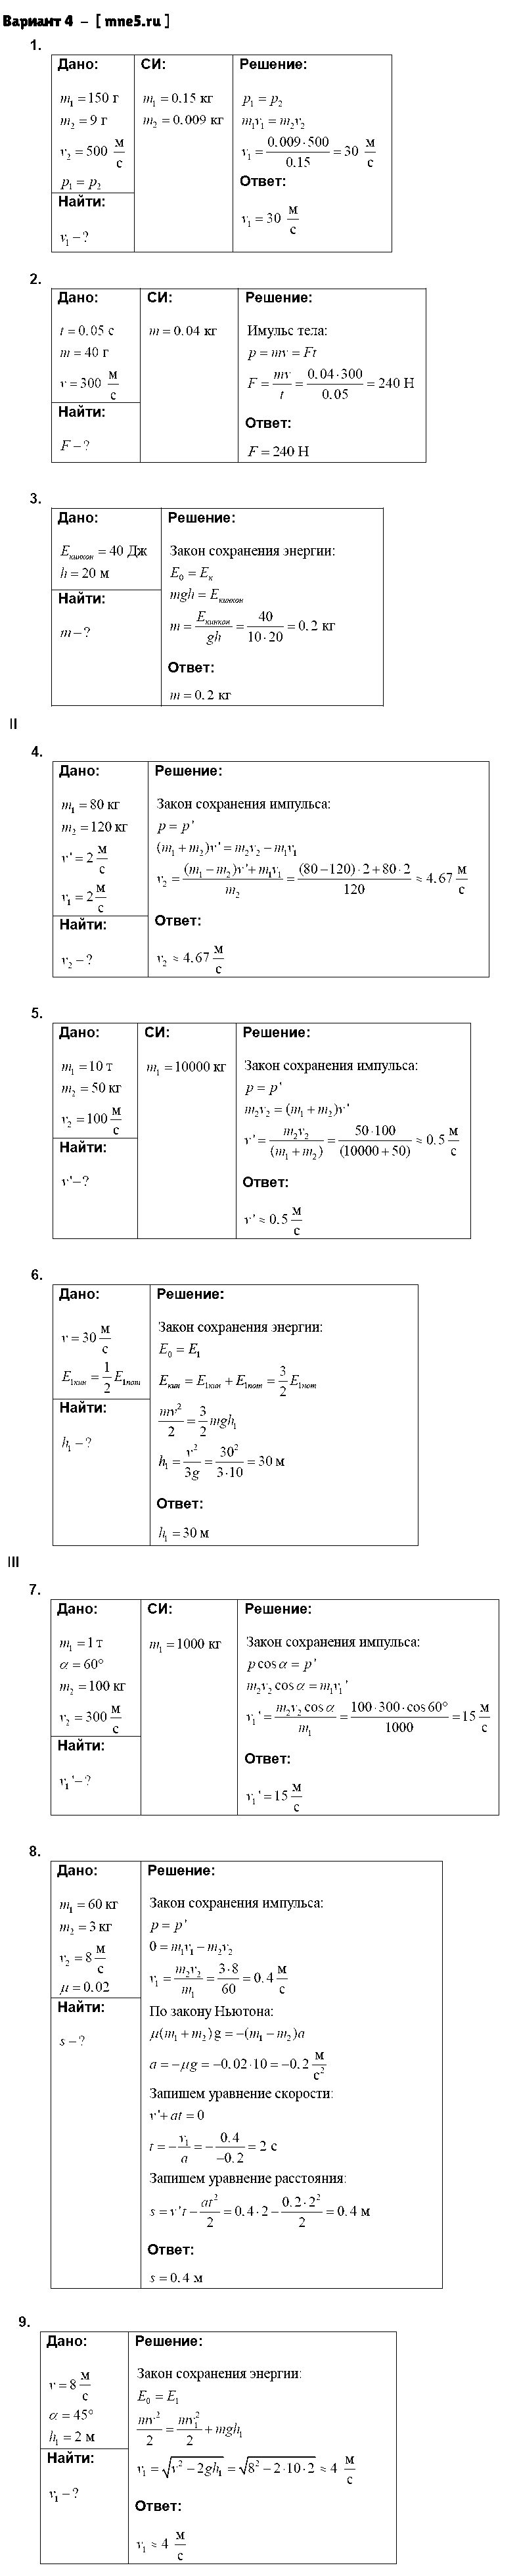 ГДЗ Физика 9 класс - Вариант 4